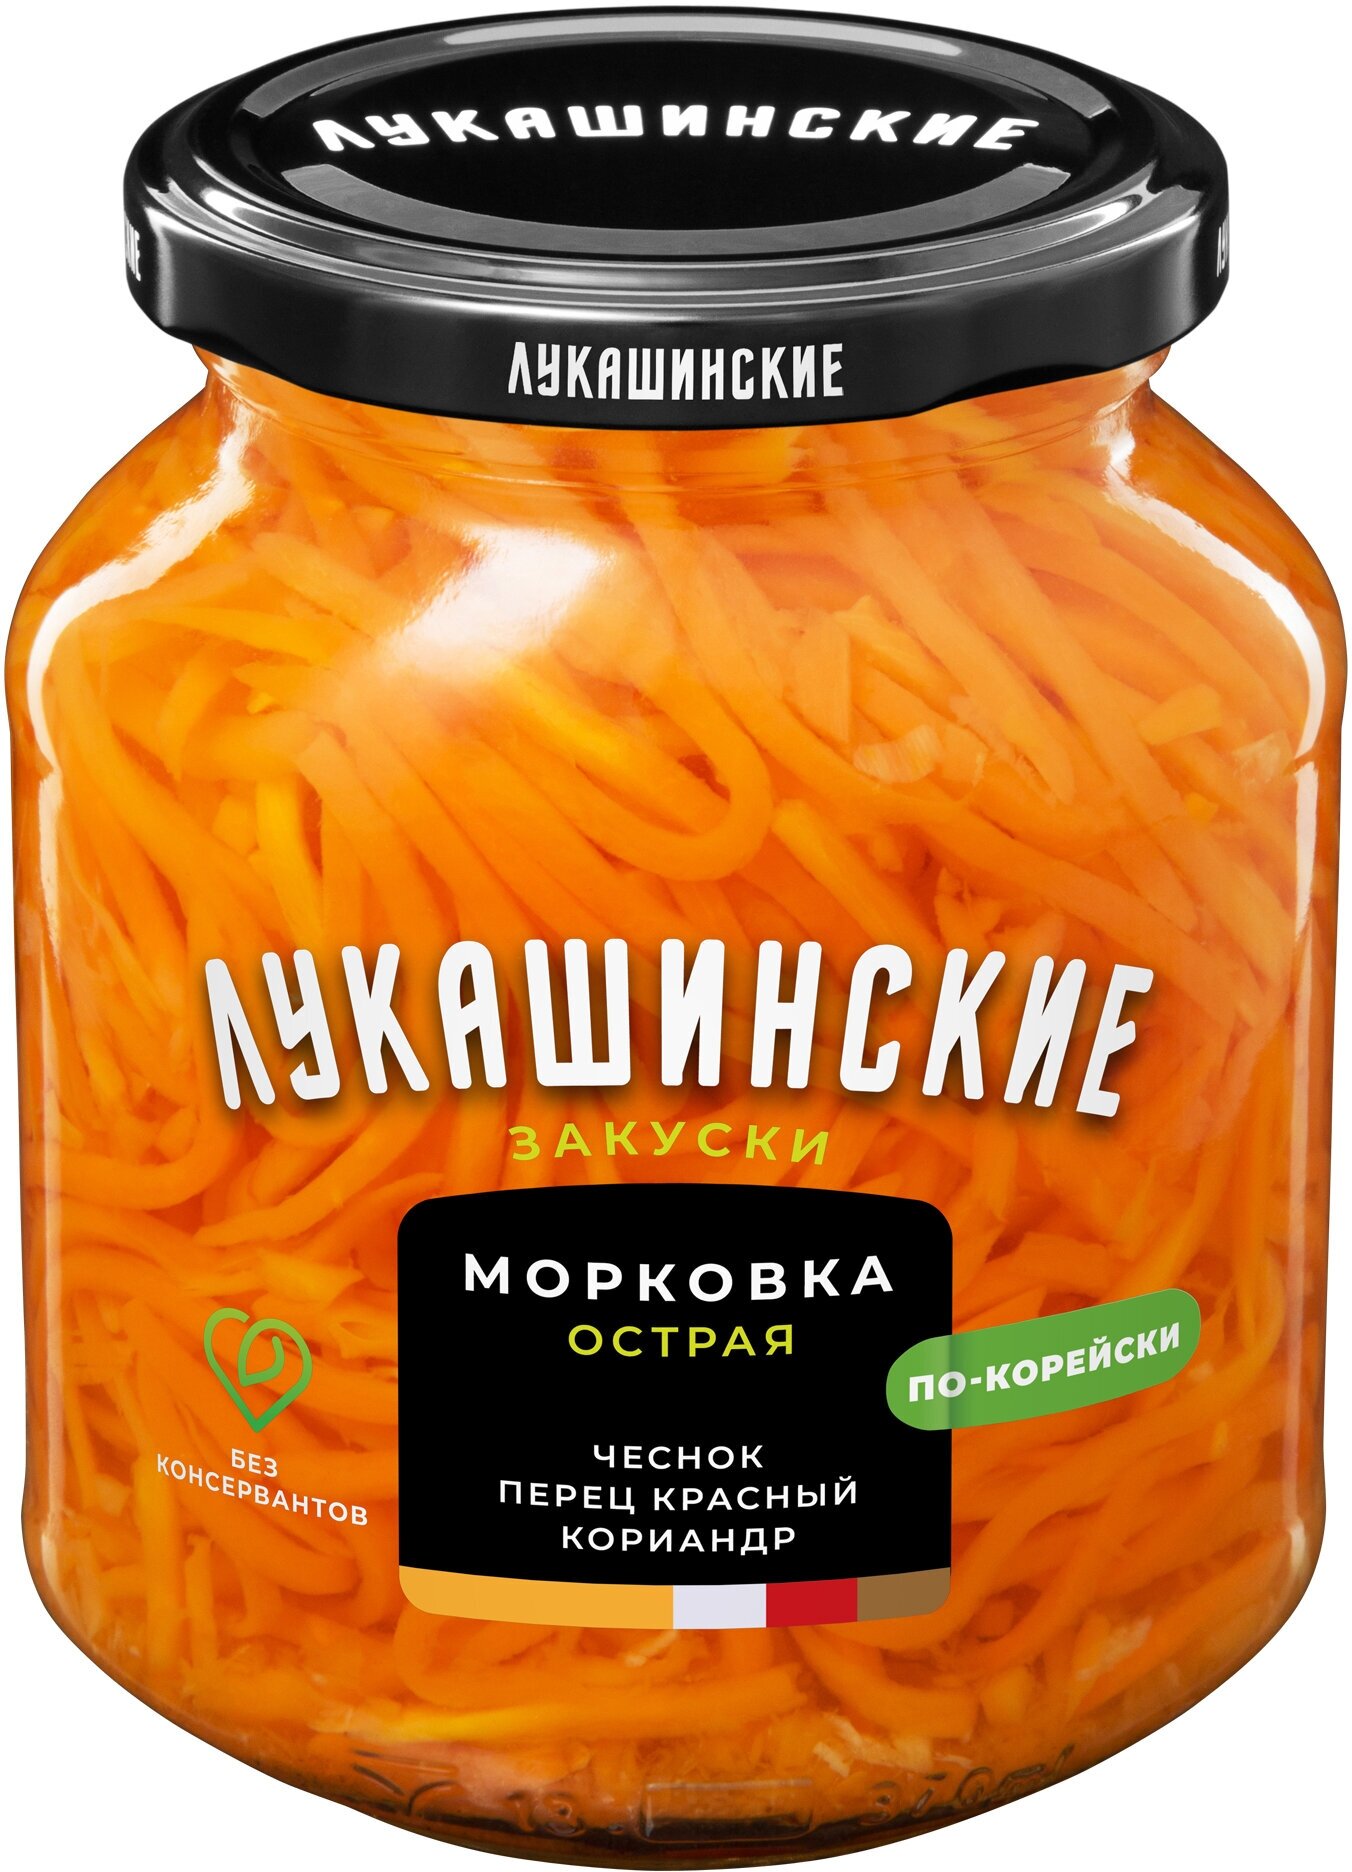 Морковка острая по-корейски лукашинские, 340 г